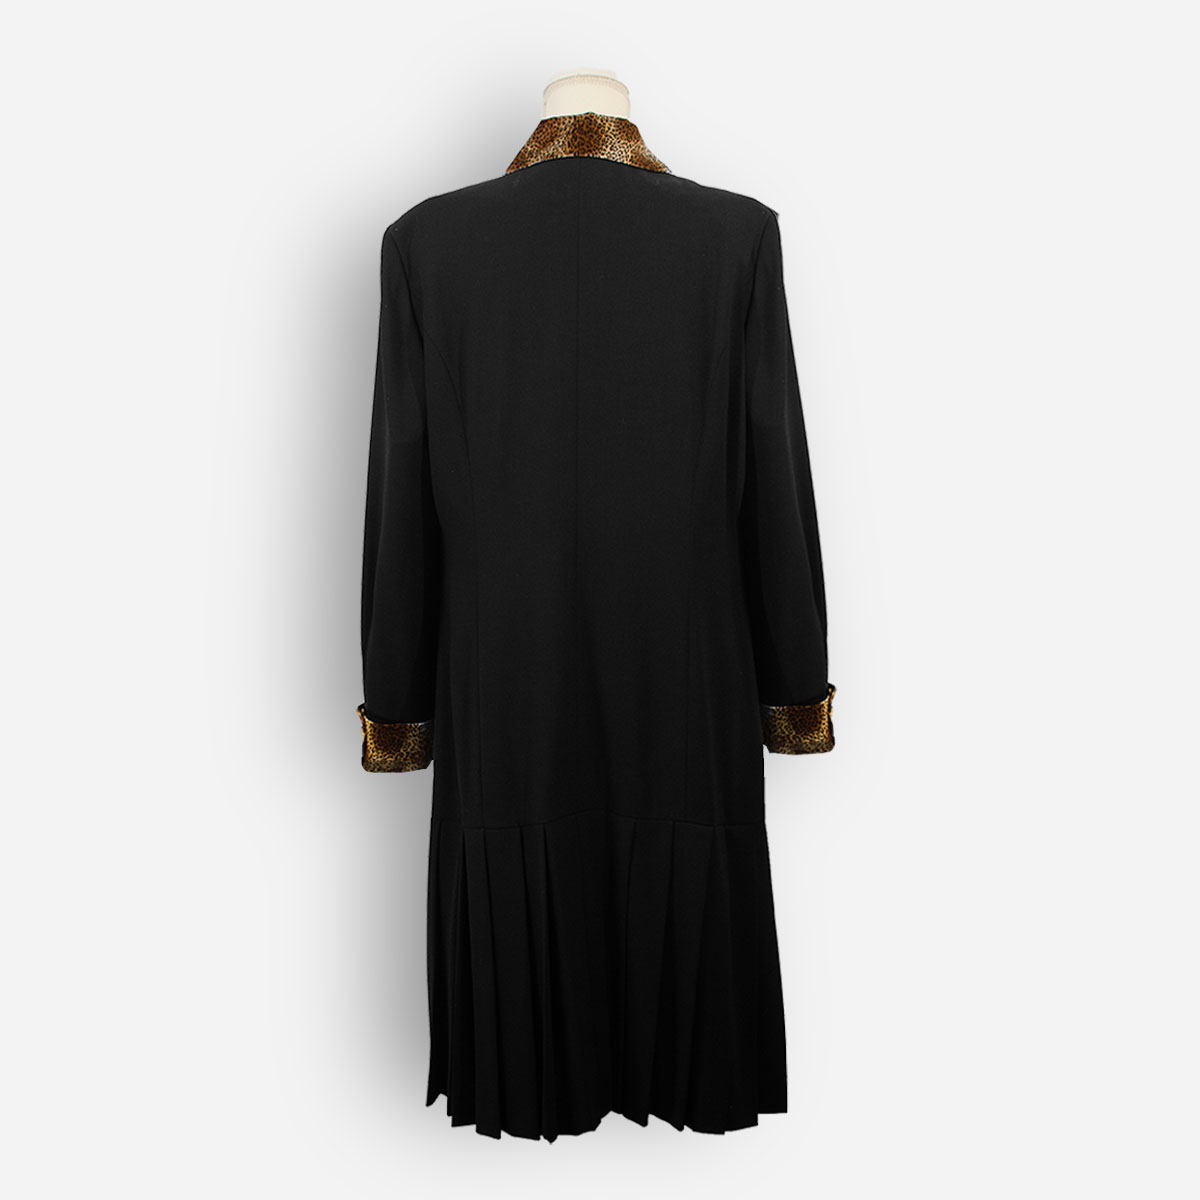 Escada black wool dress